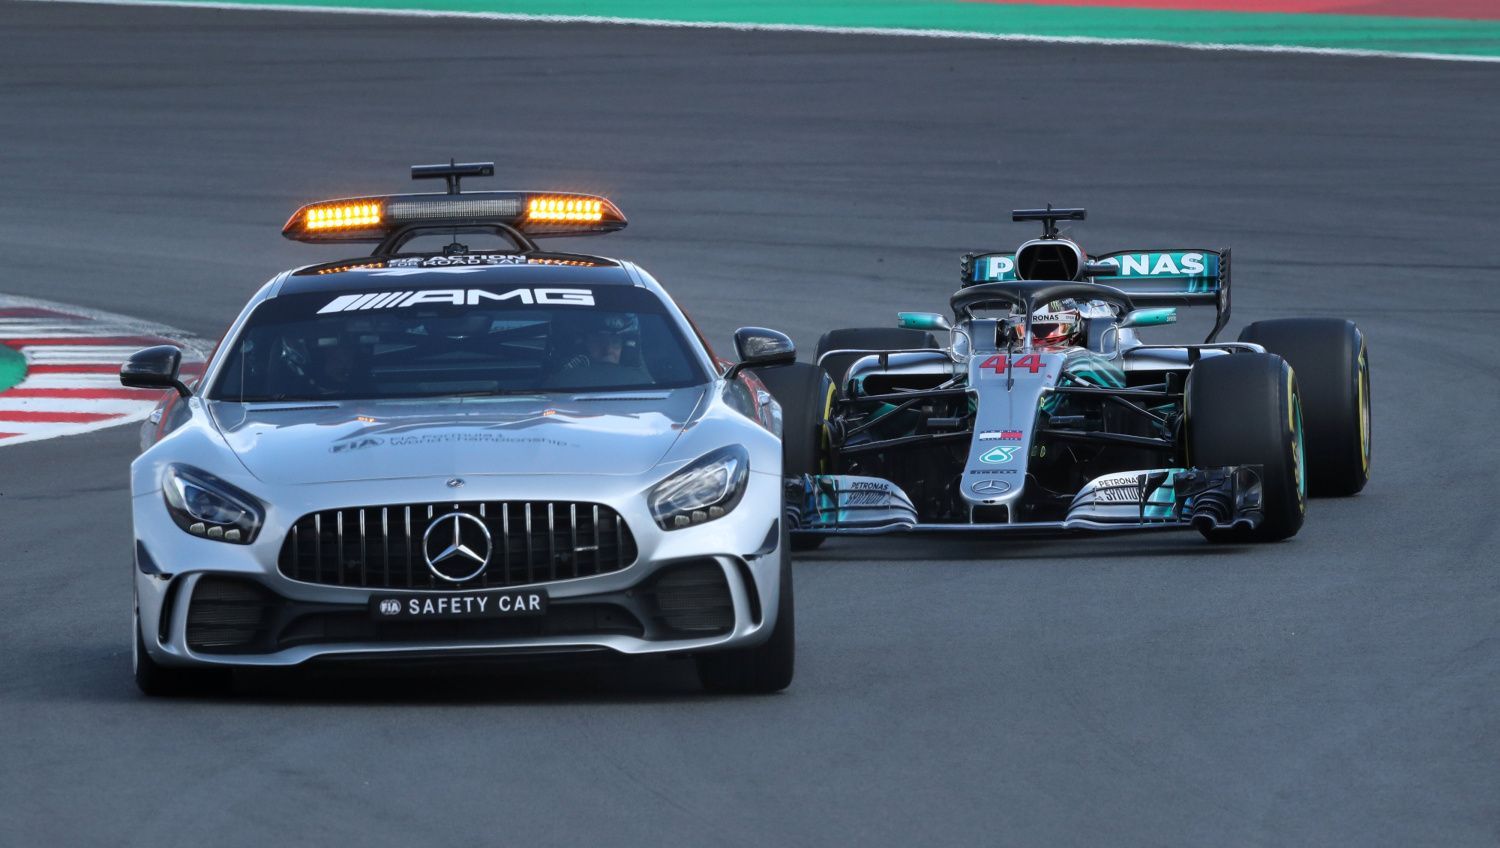 F1, VC Španělska 2018: Lewis Hamilton za safety car